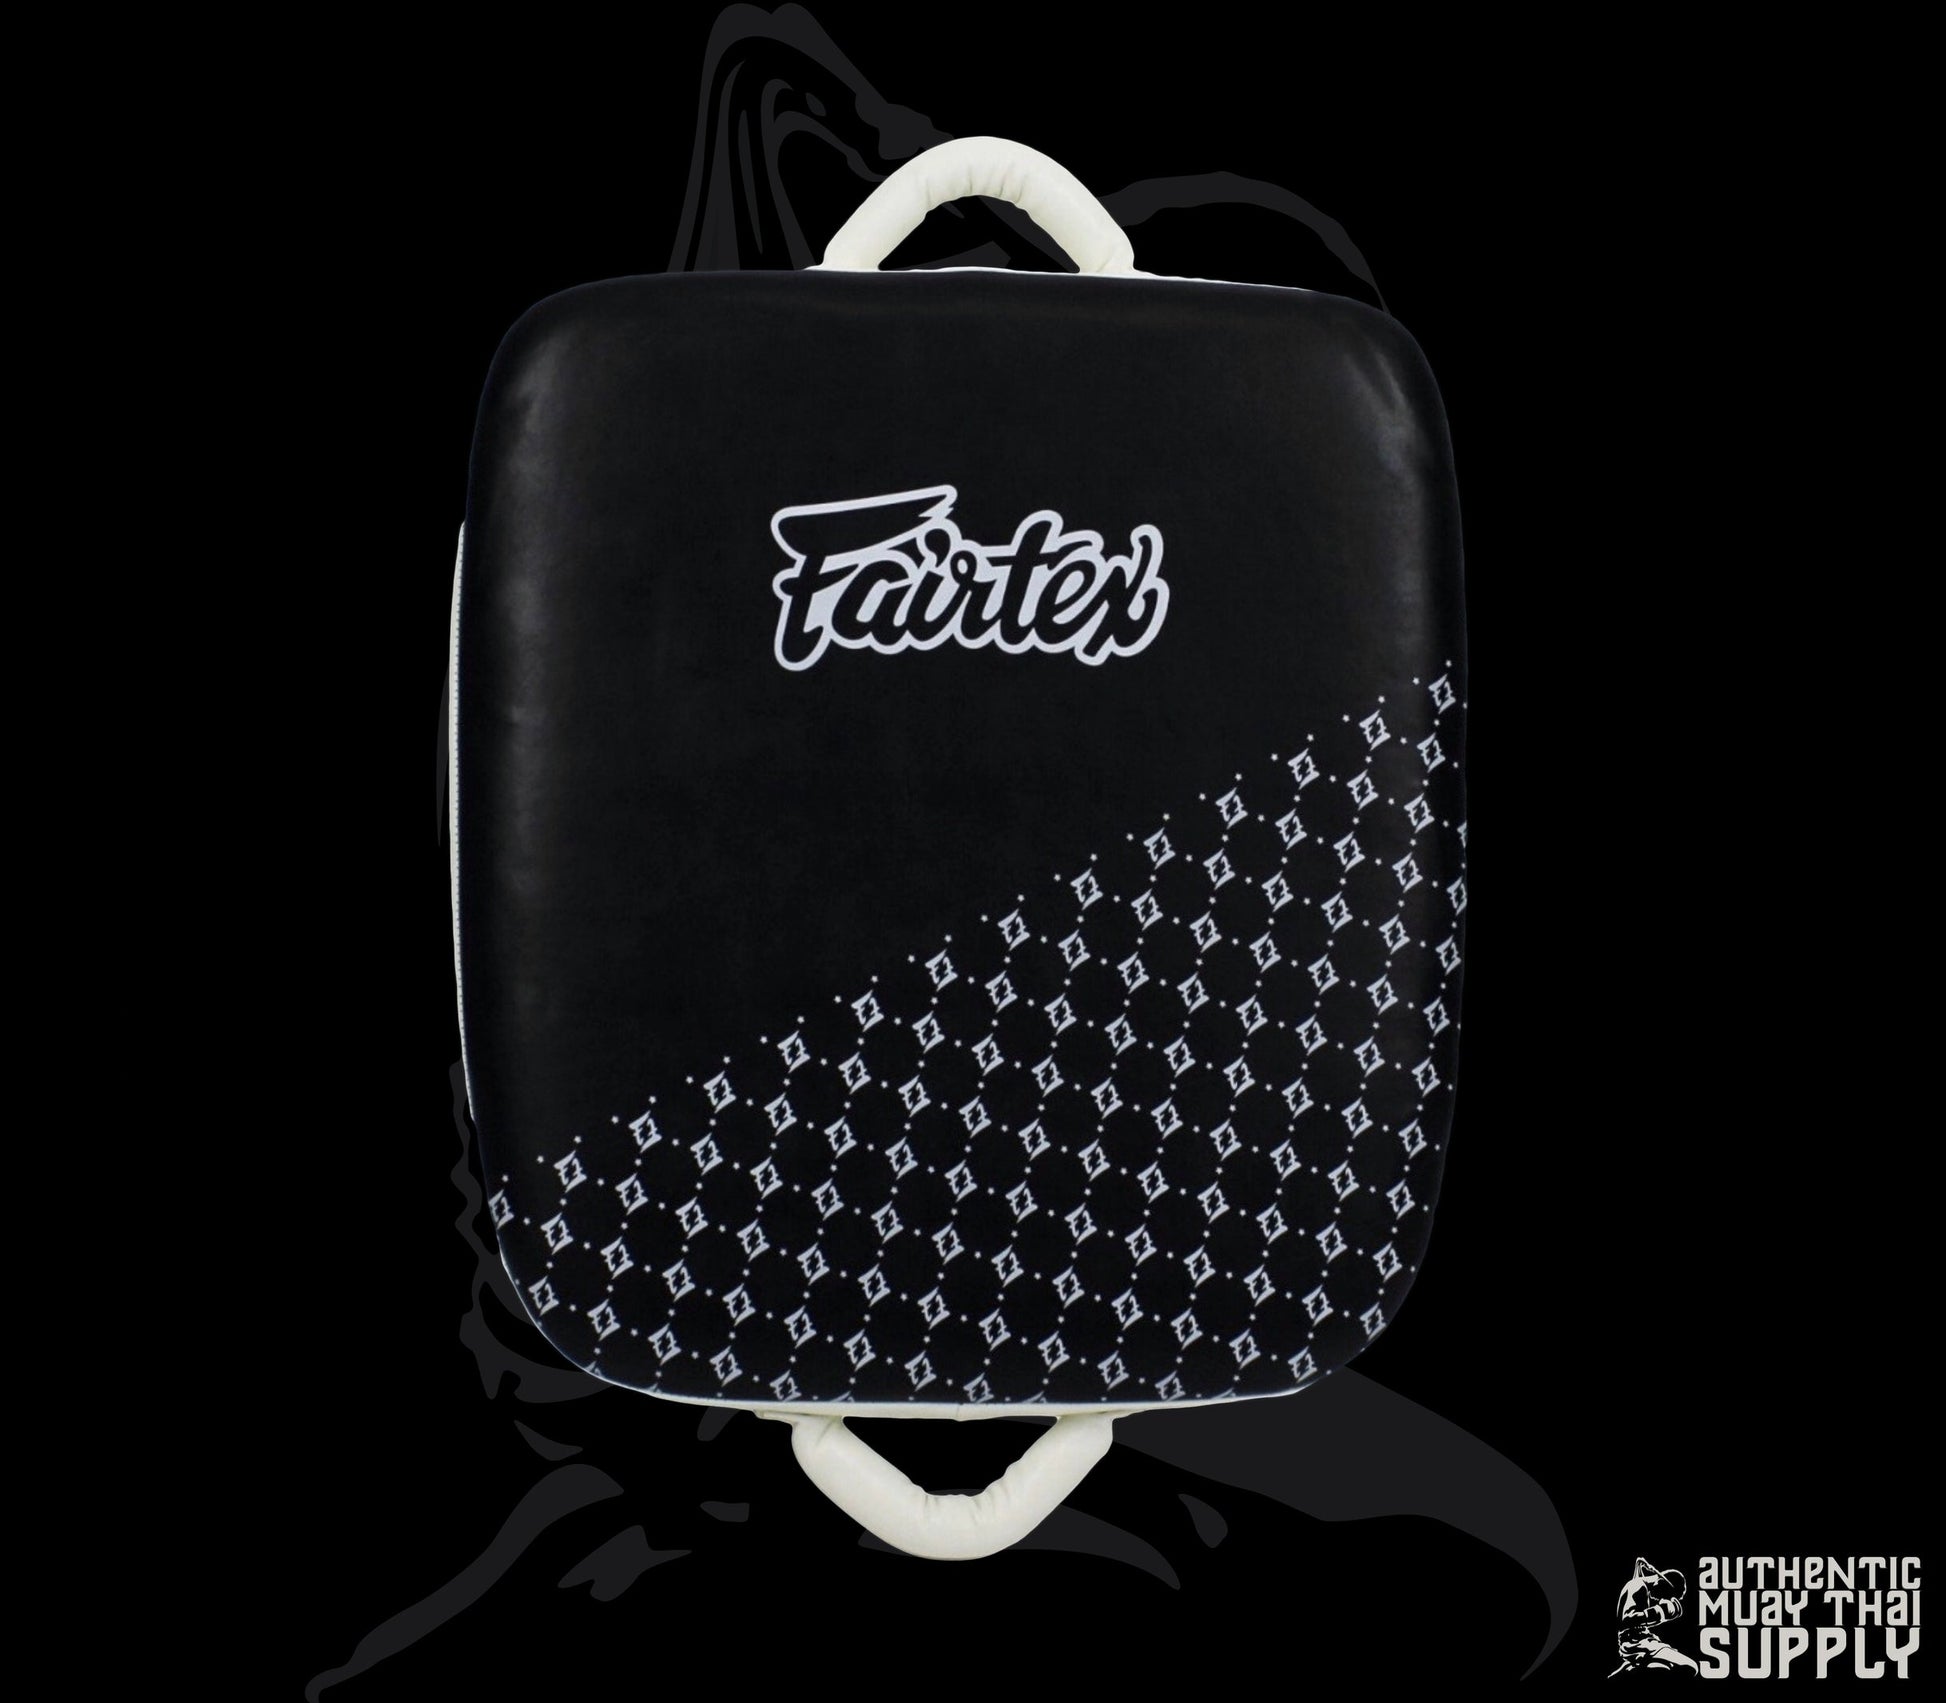 Fairtex Travel Bag - Fairtex Official